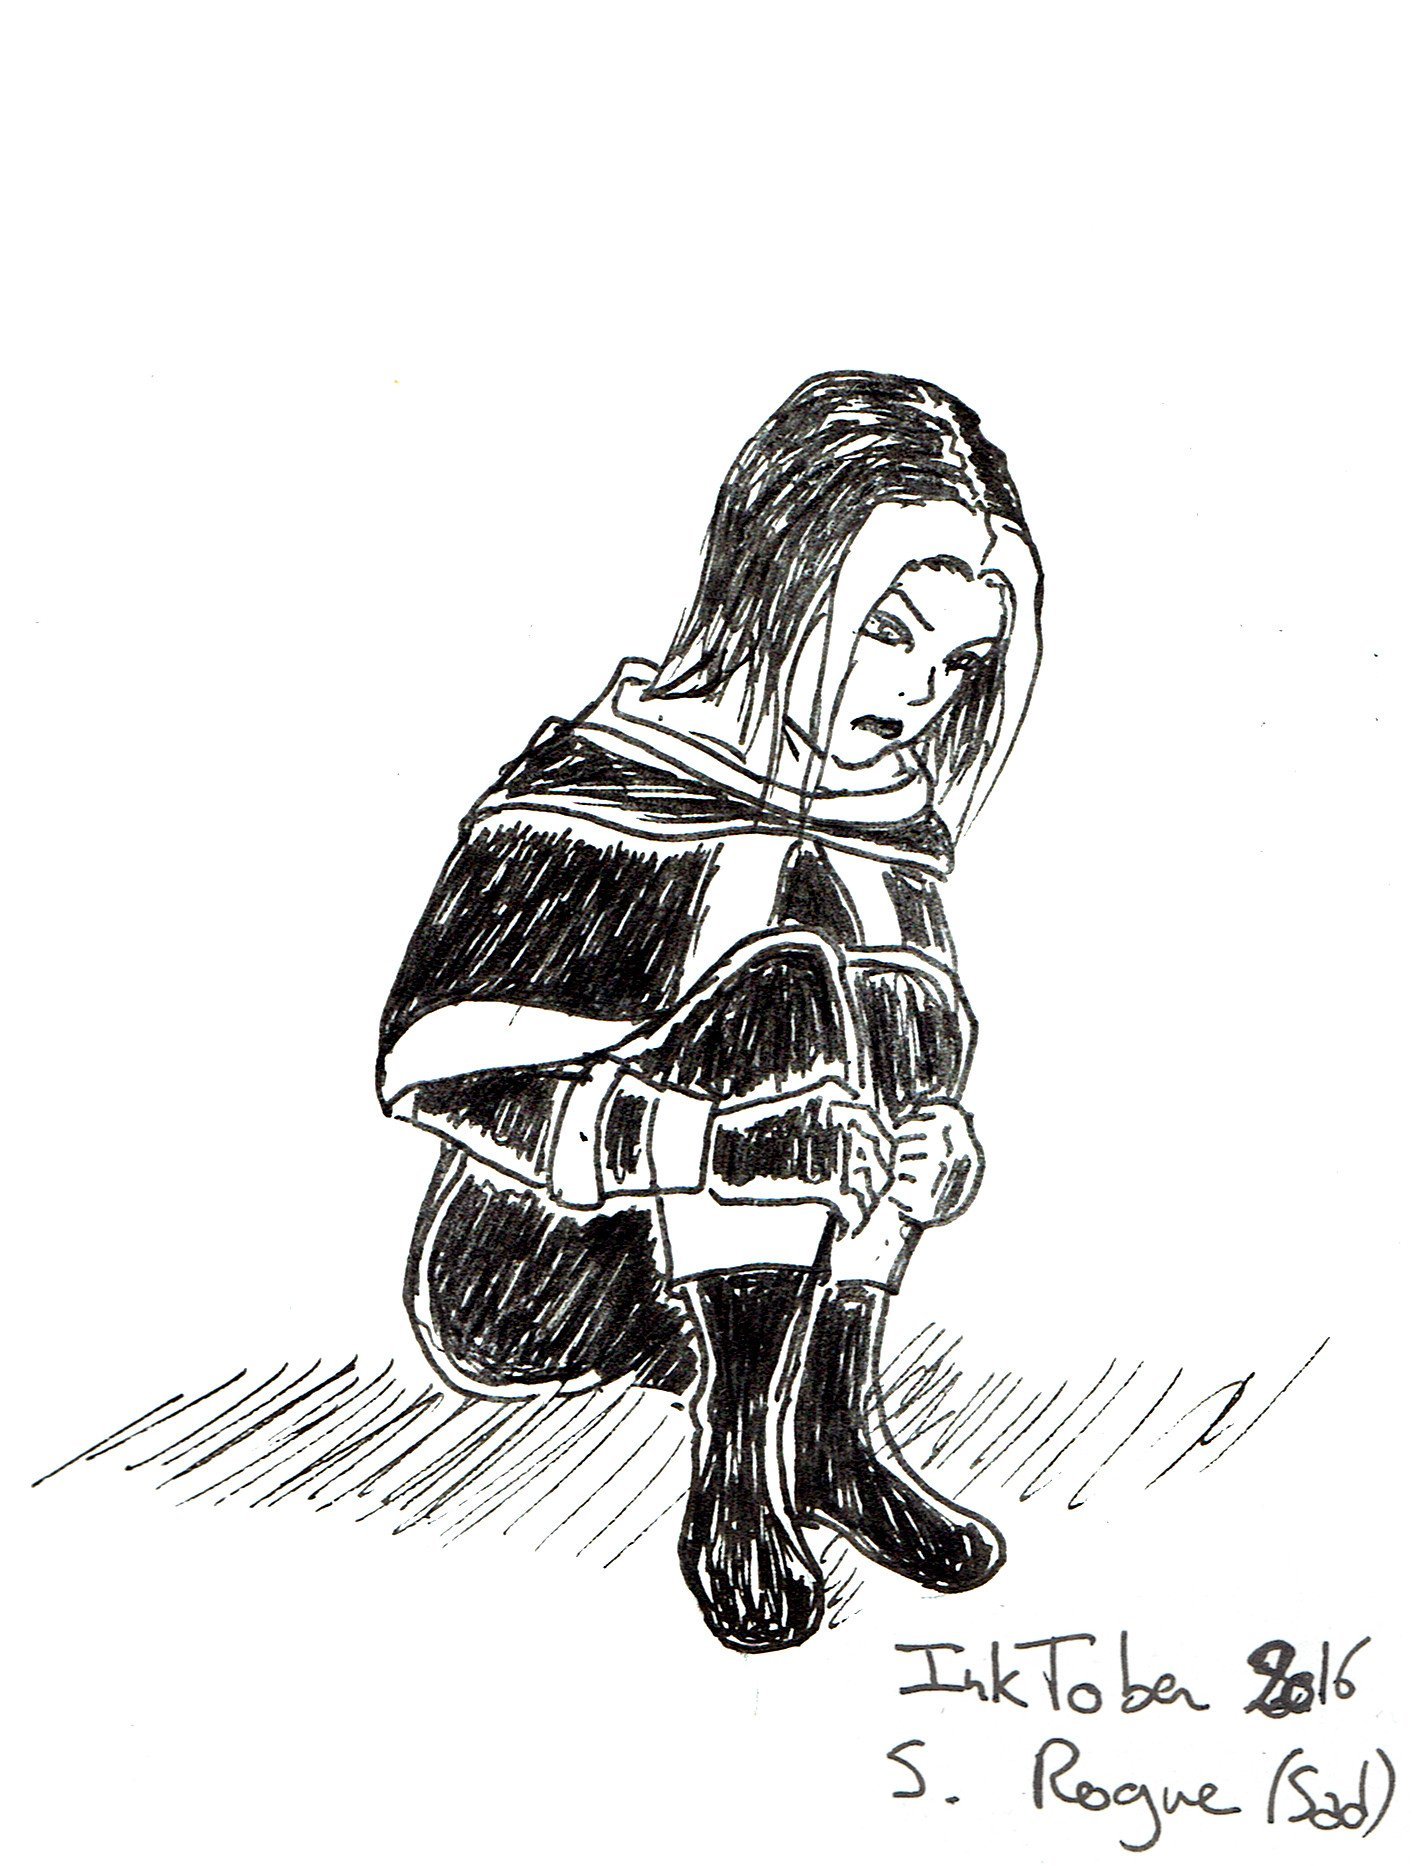 Une jeune femme assise, presque en position fœtale. Elle a deux mèches blanches et l'air triste.